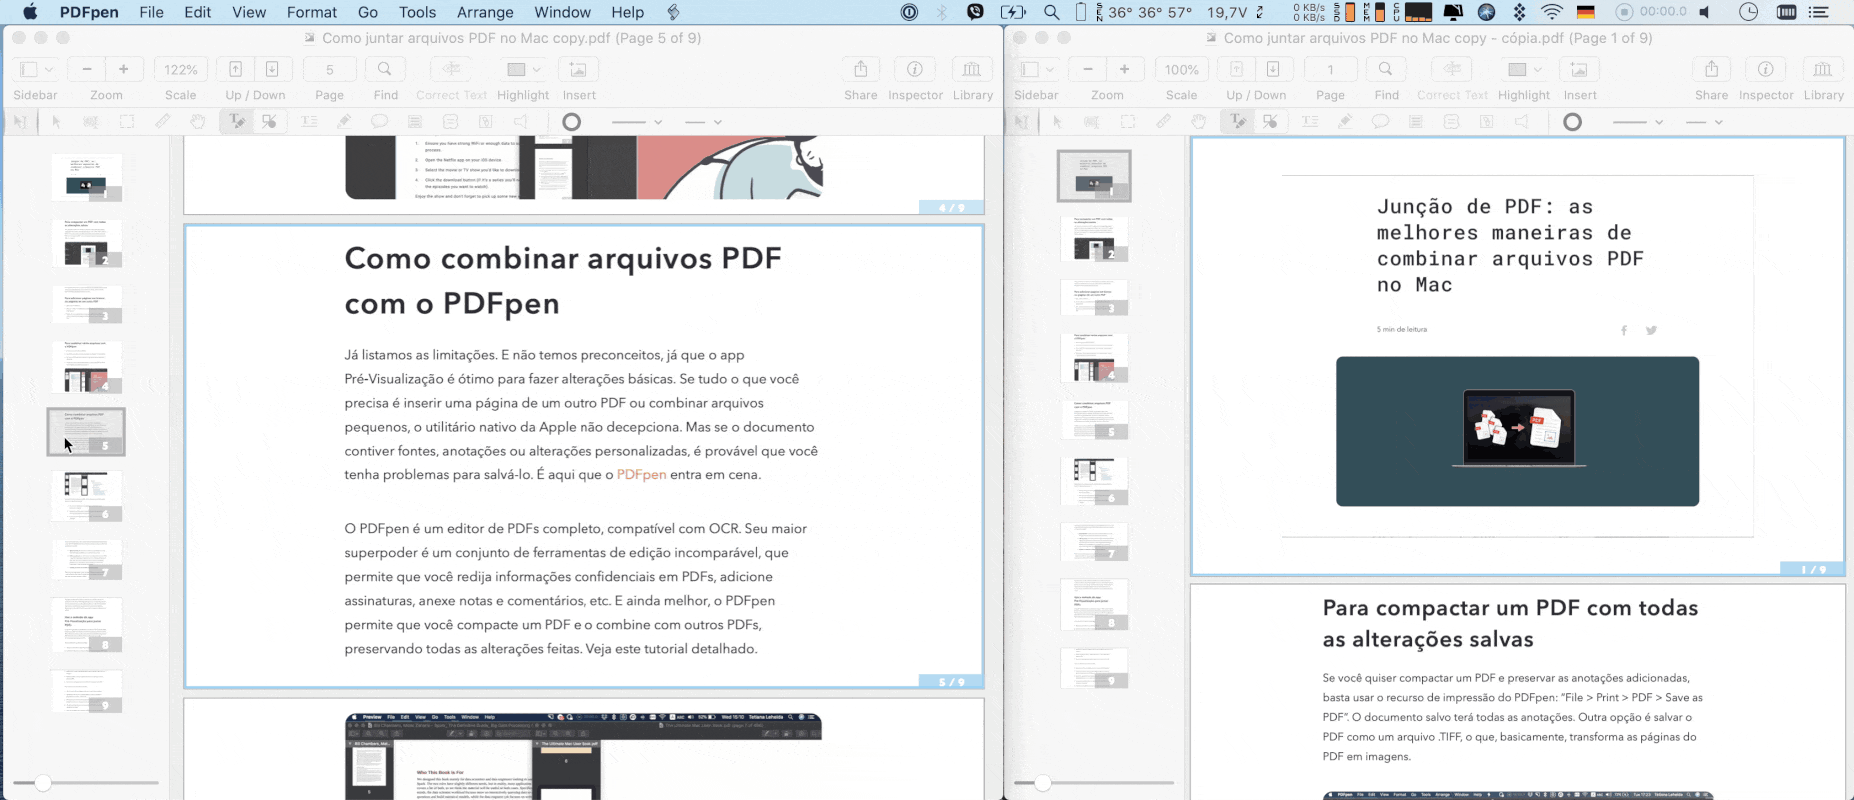 Combine vários arquivos PDF em um só